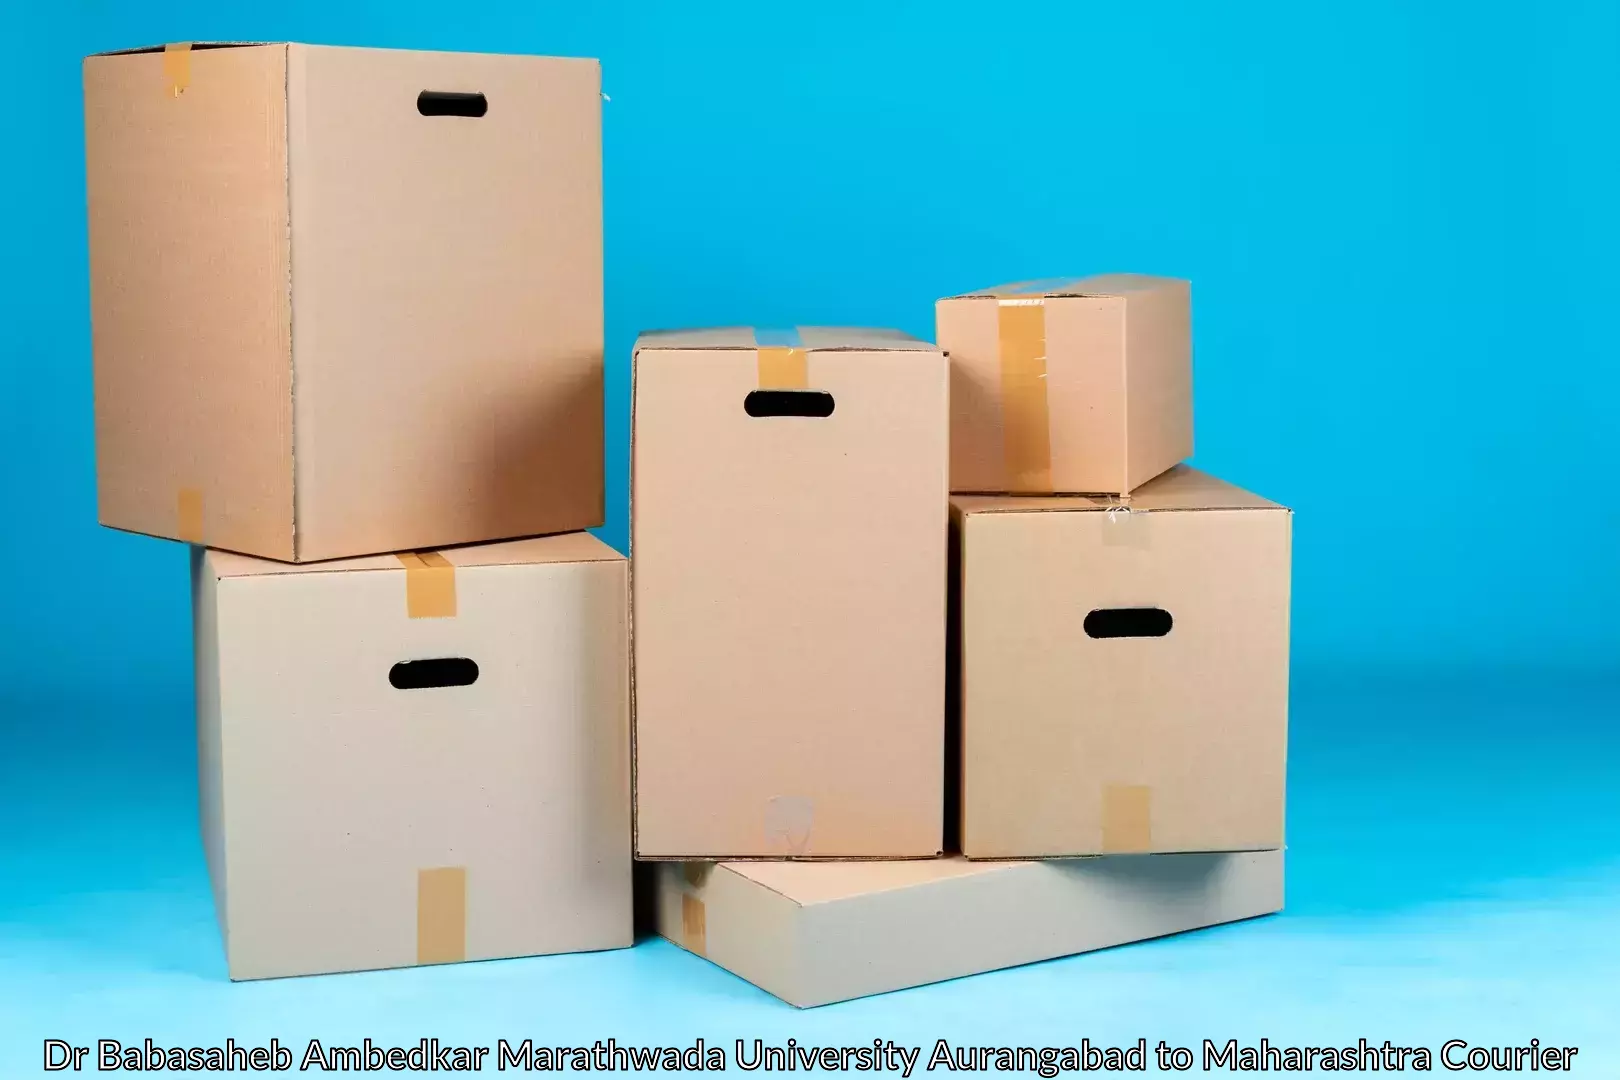 Furniture moving experts Dr Babasaheb Ambedkar Marathwada University Aurangabad to Palghar